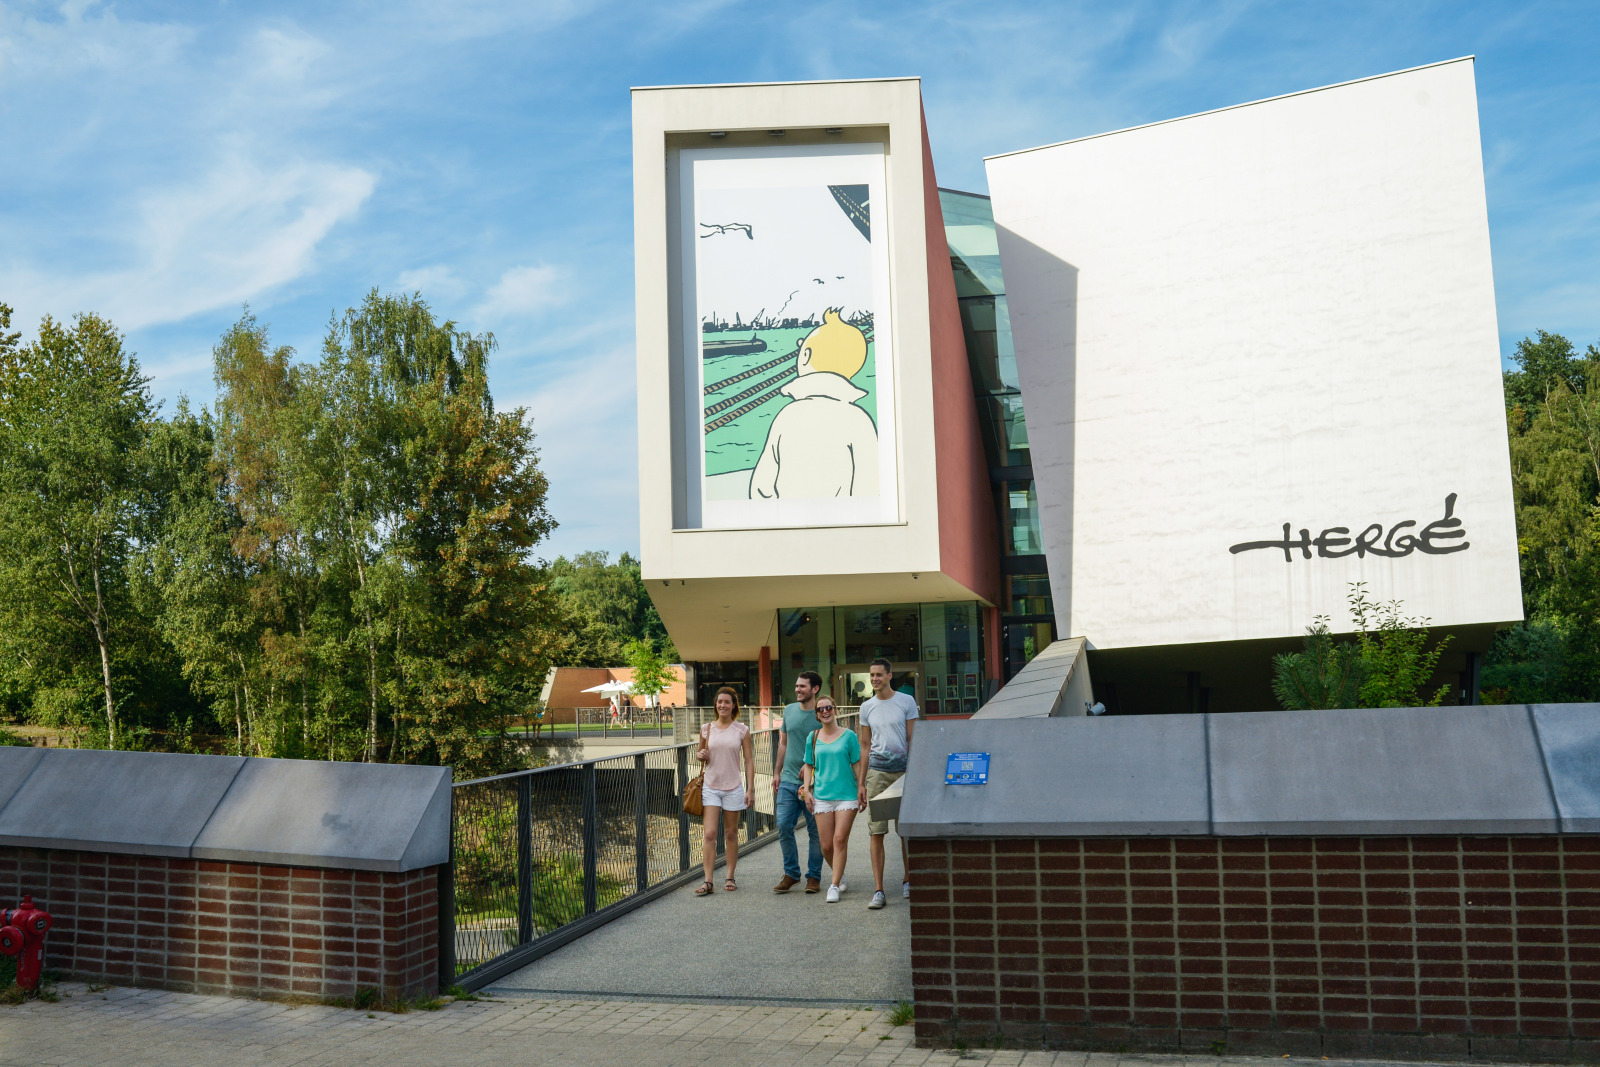 Außenansicht des Hergé-Museums mit herauskommenden Besuchern